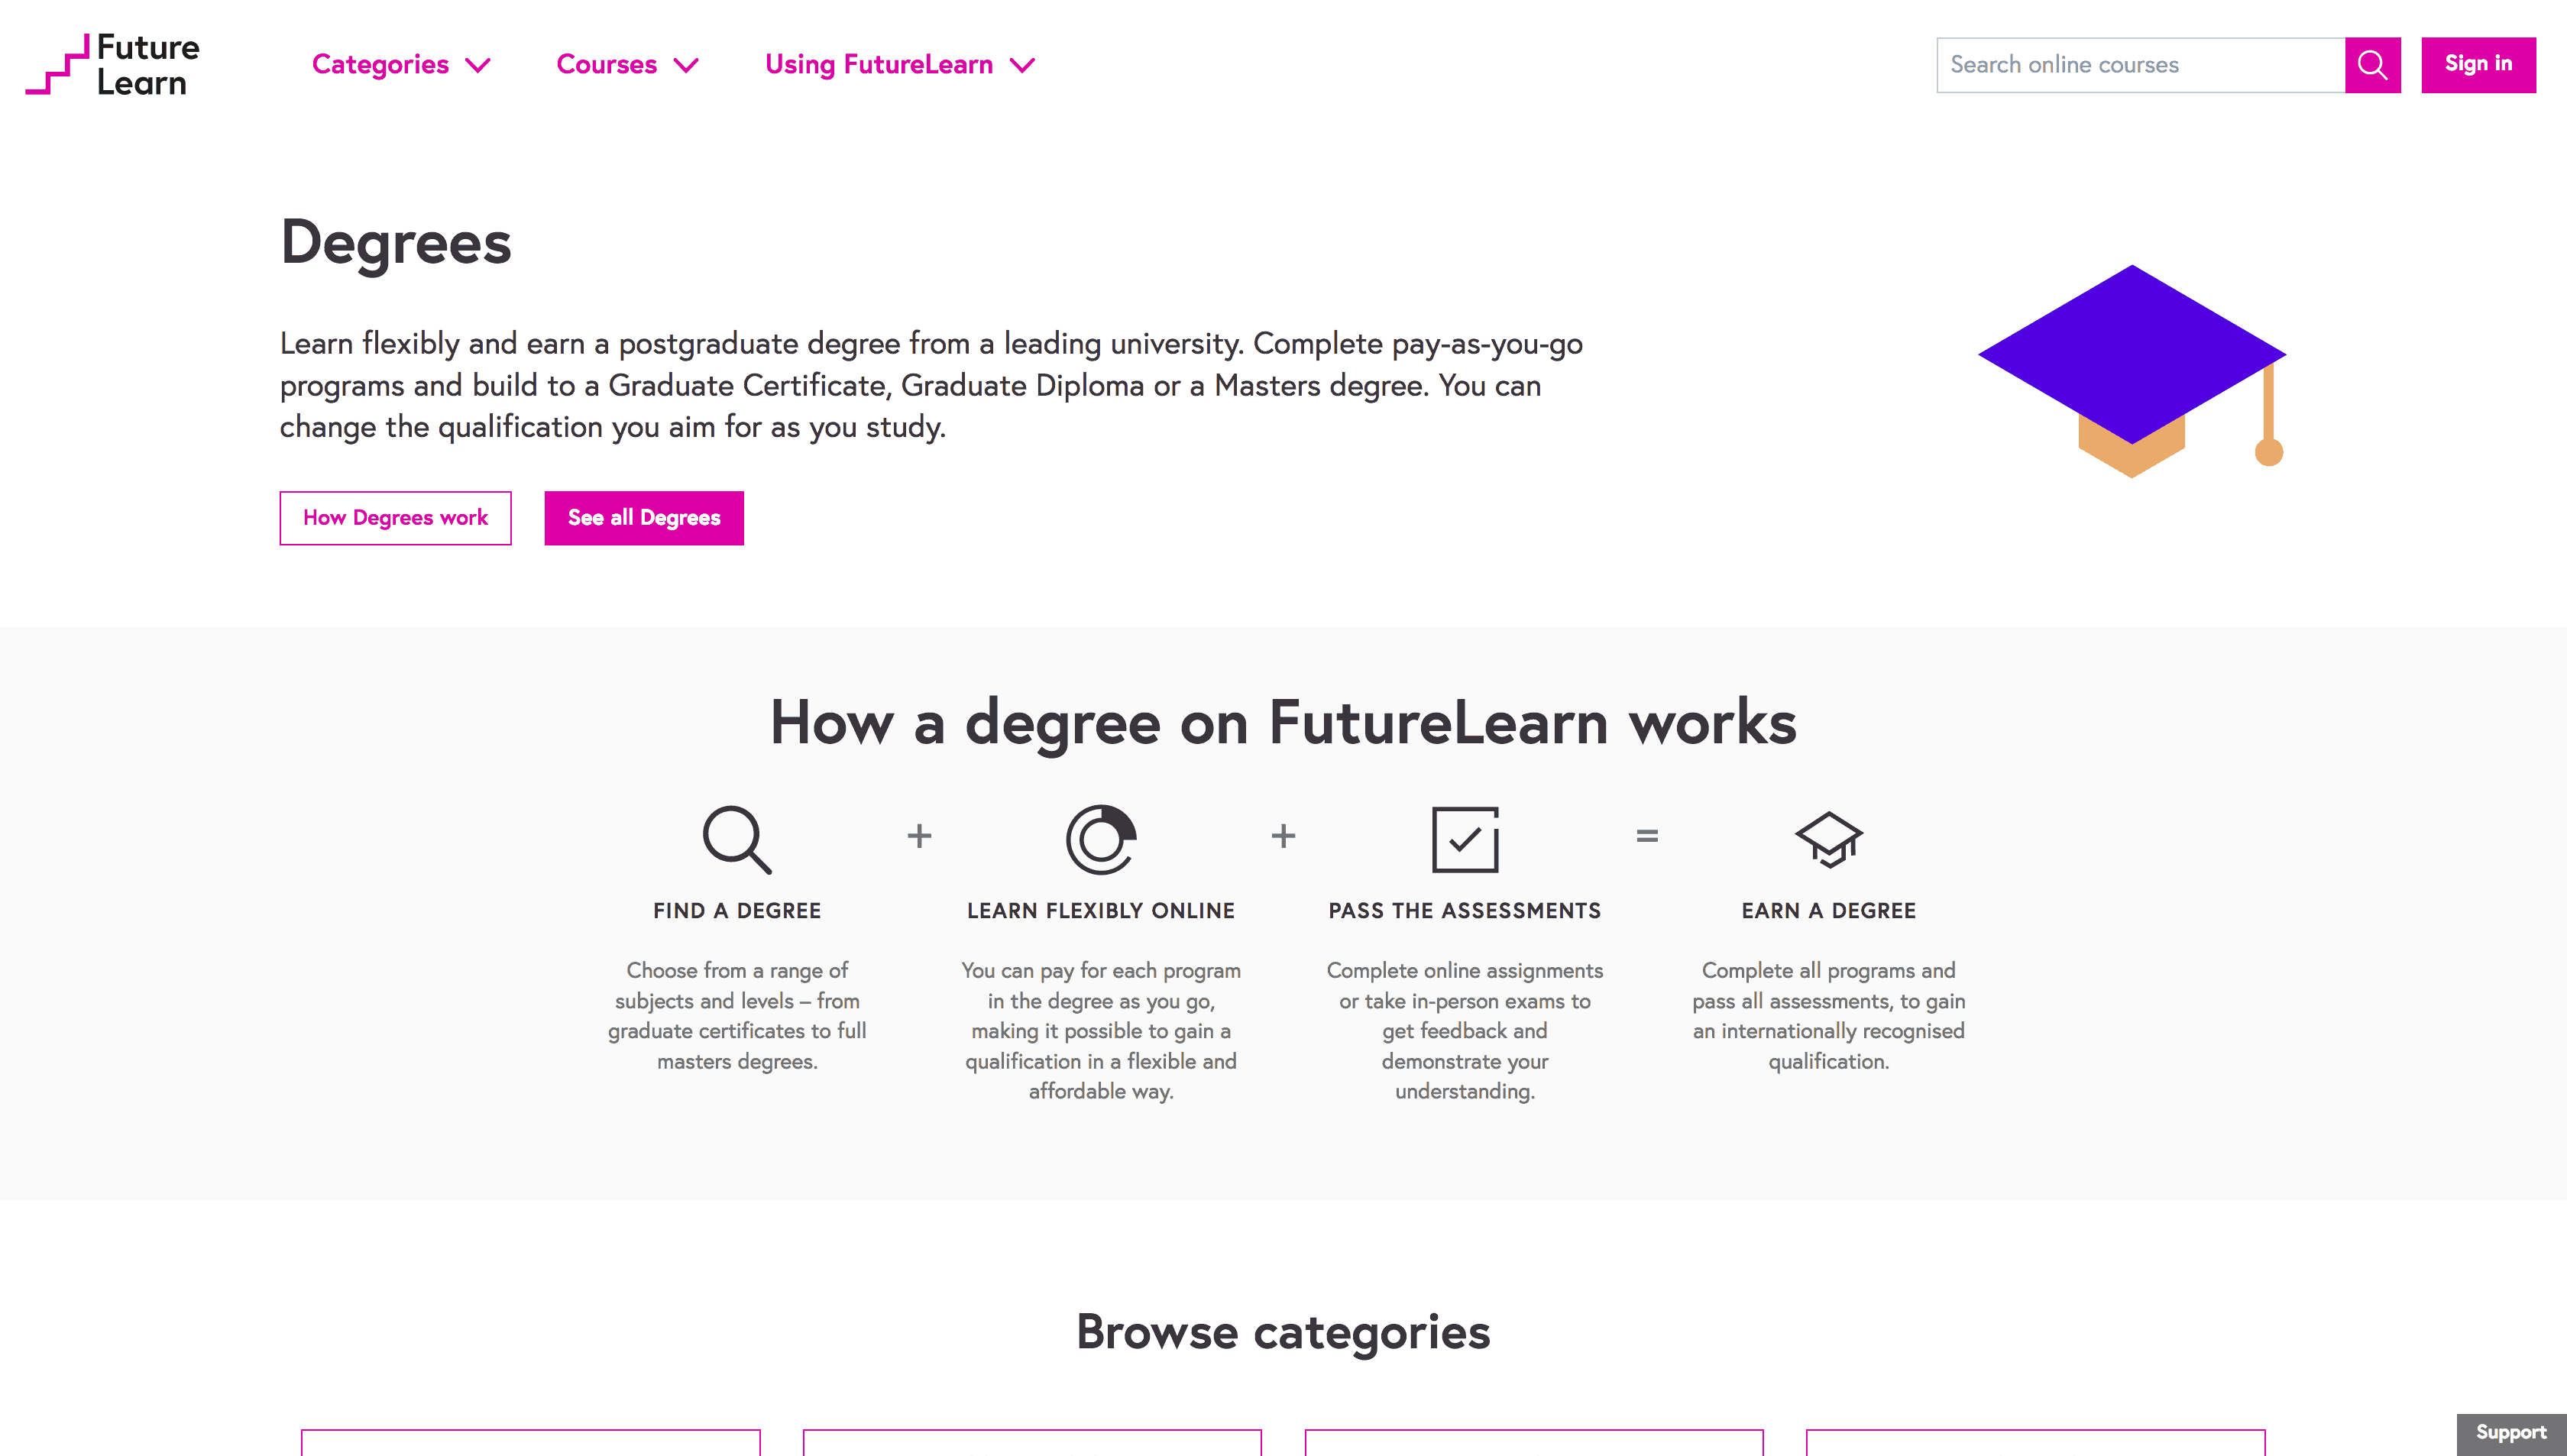 FutureLearn Degrees page (Dec 2018)